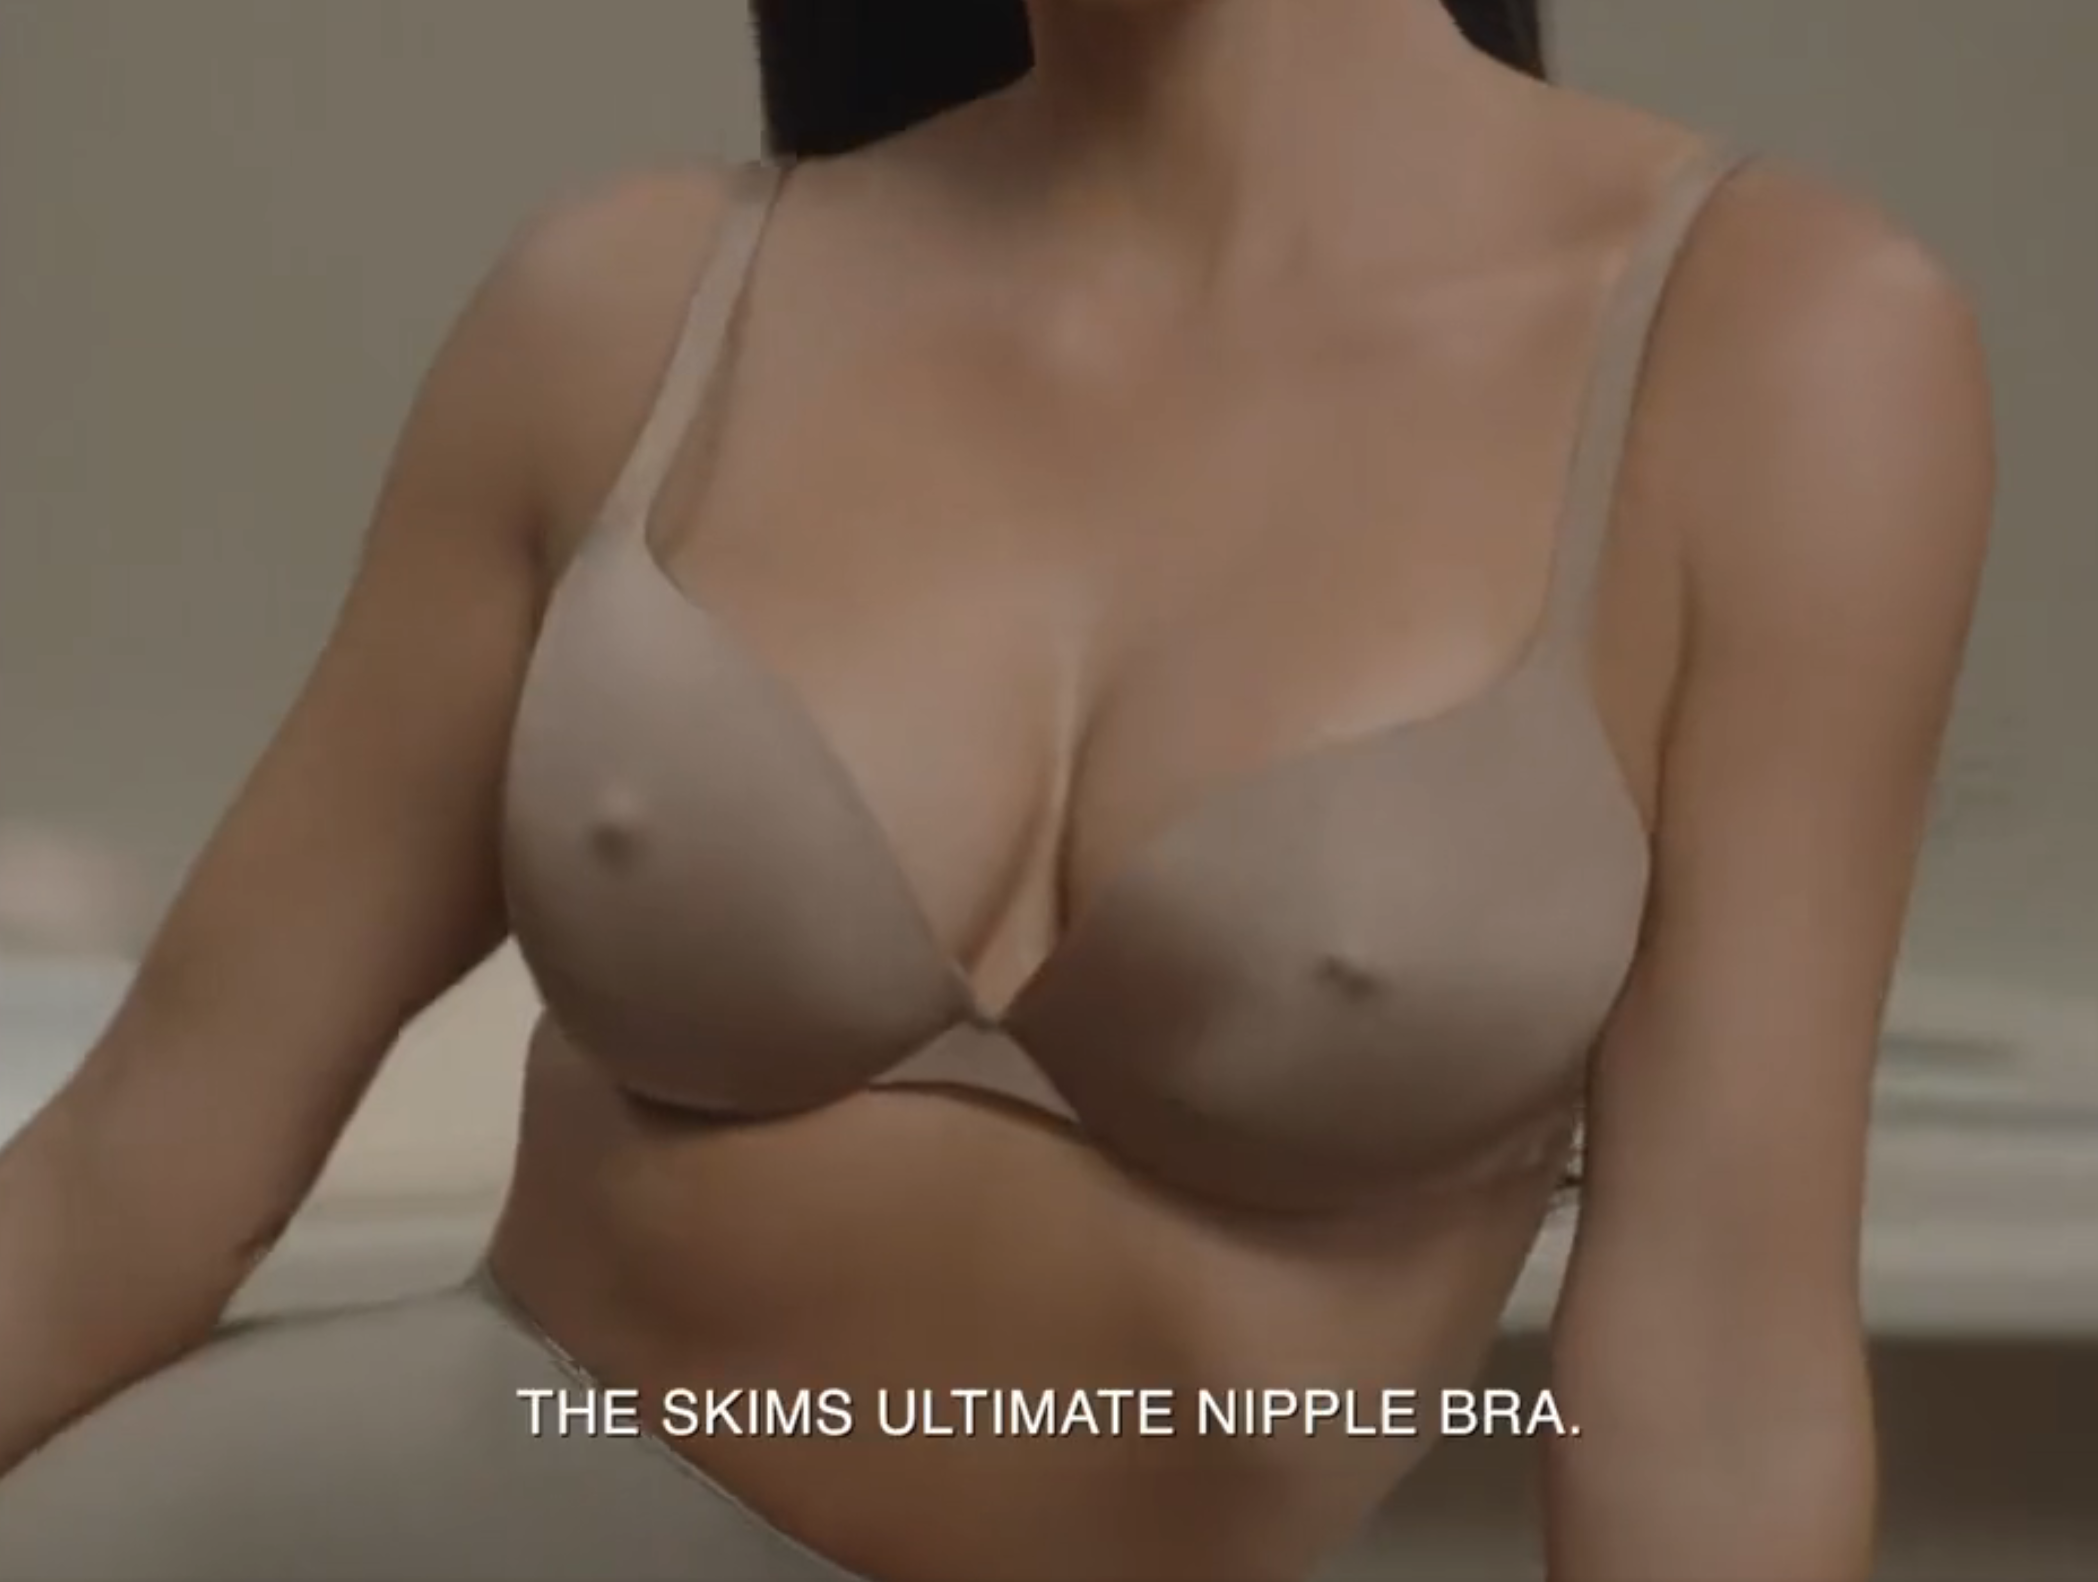 Skims: the ultimate nipple bra?! Wtf!